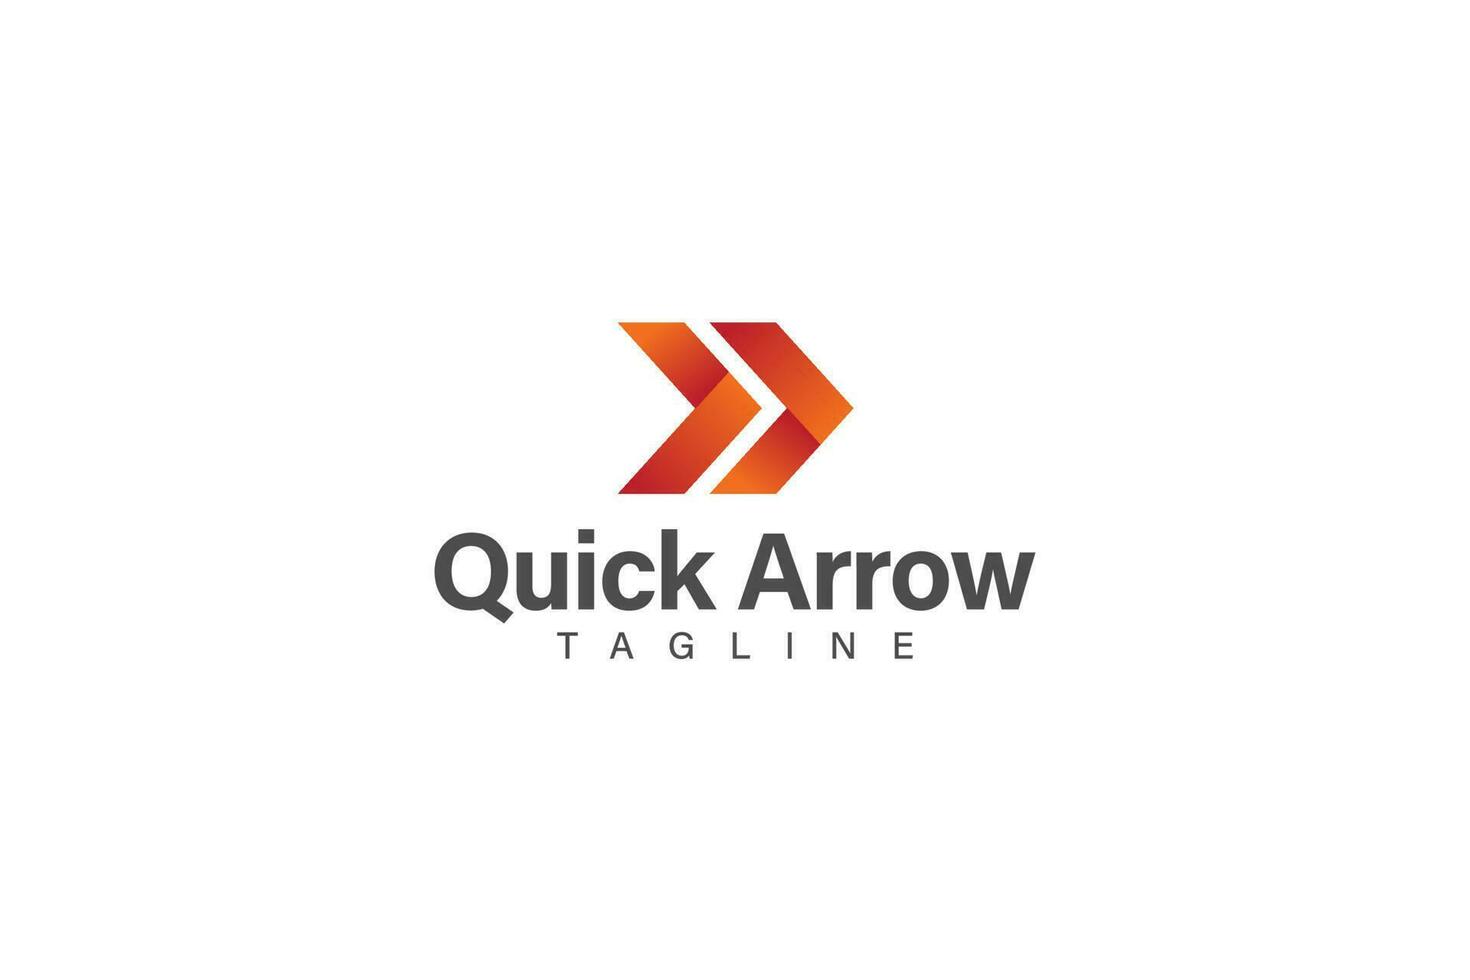 Quick arrow logo or icon design vector